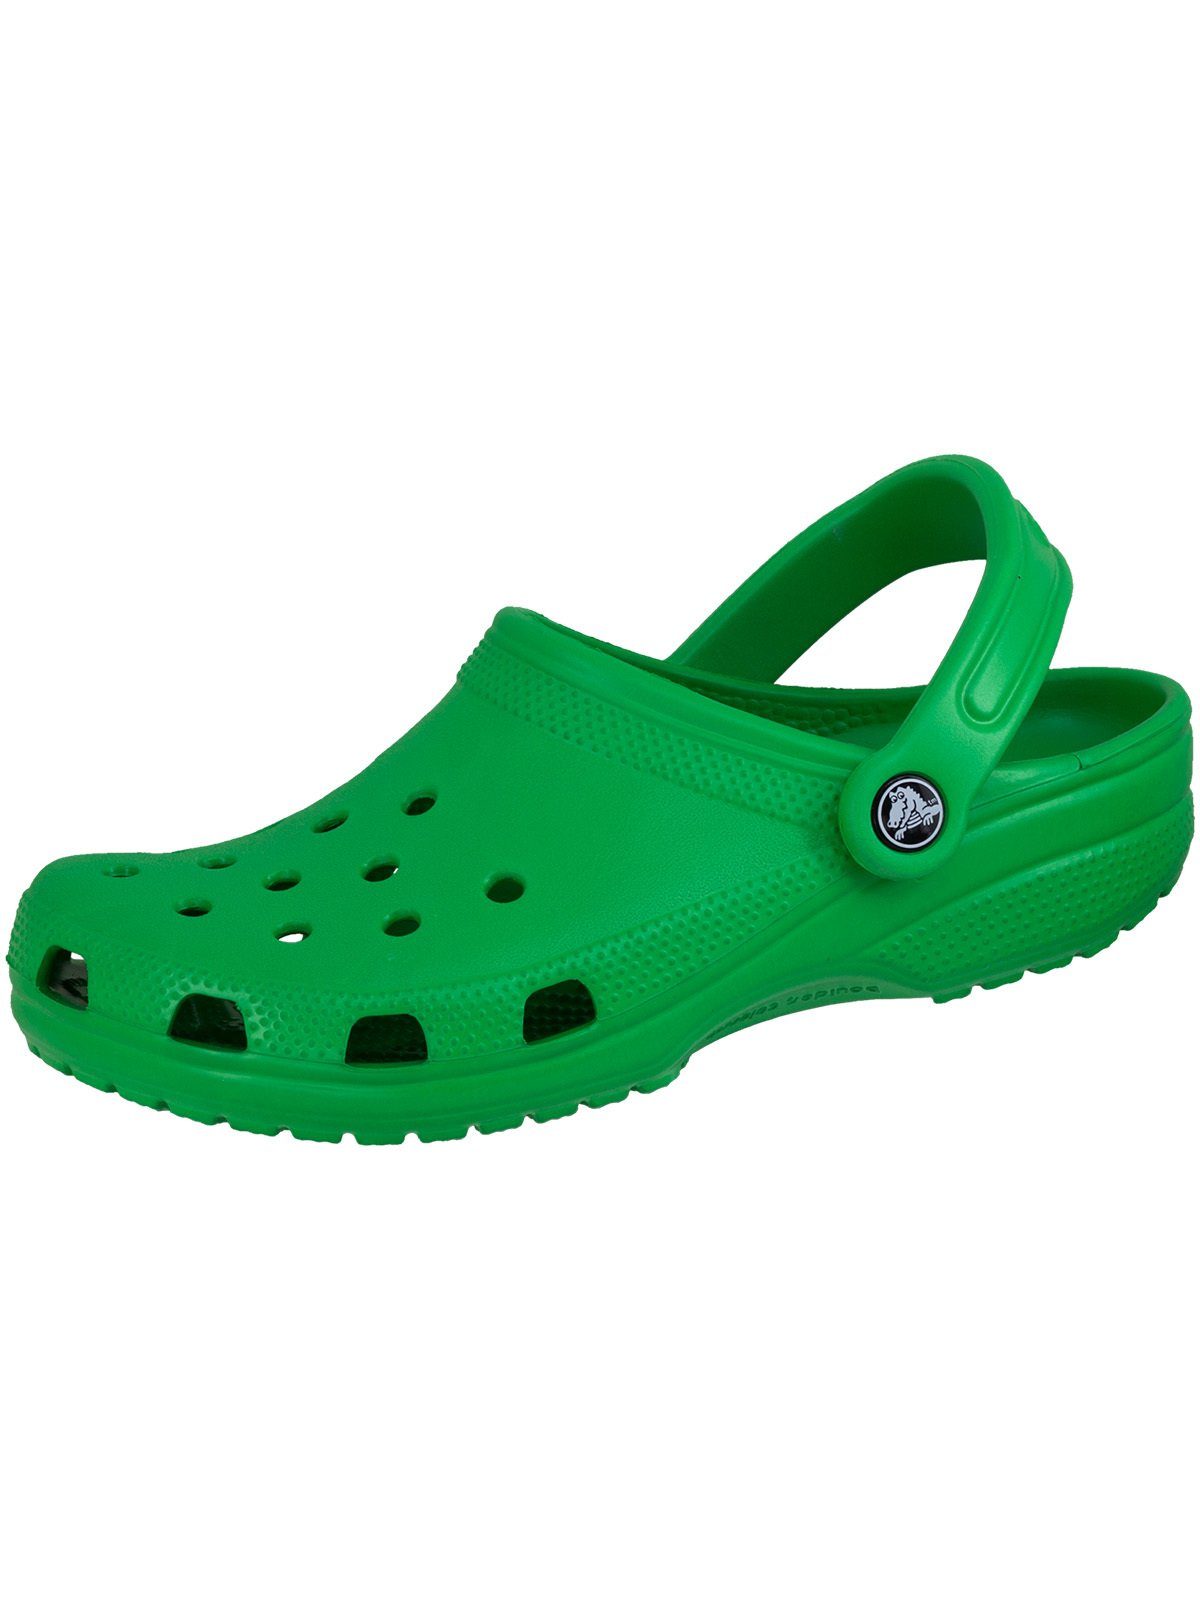 Classic Crocs Clog